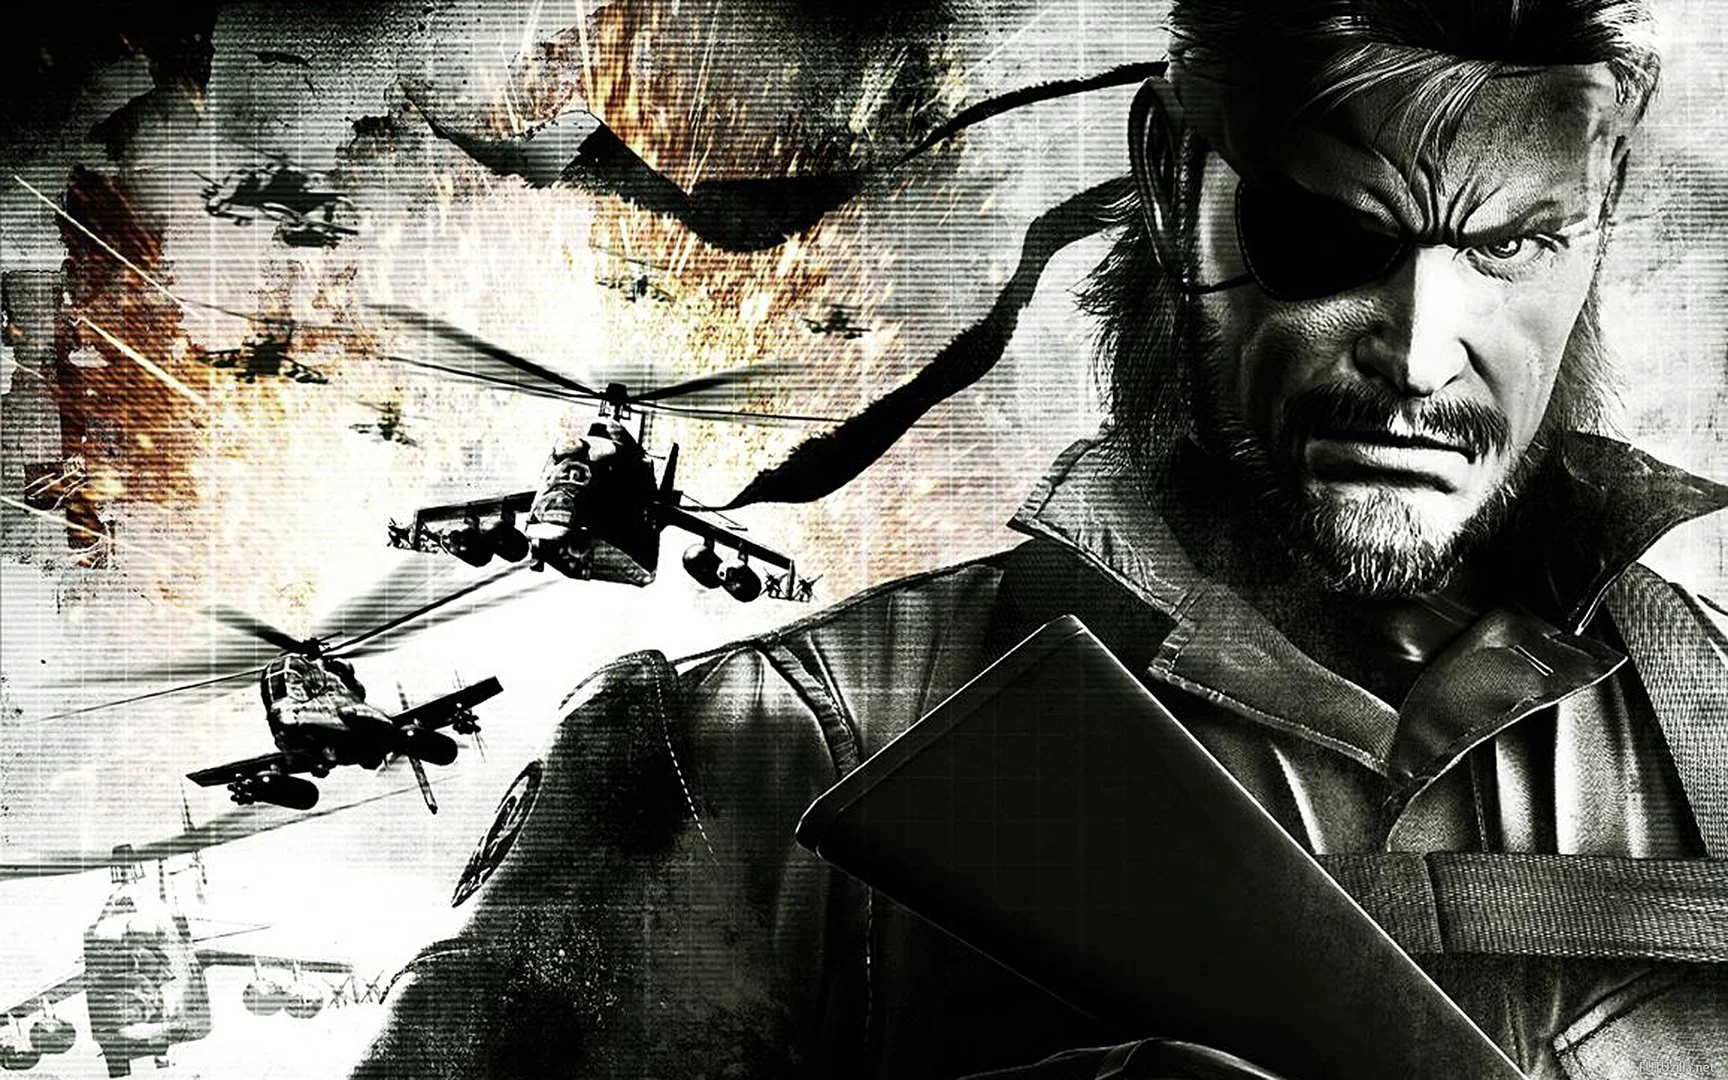 ### Психо Мэнтис, самый могущественный экстрасенс в мире по версии Metal Gear Solid